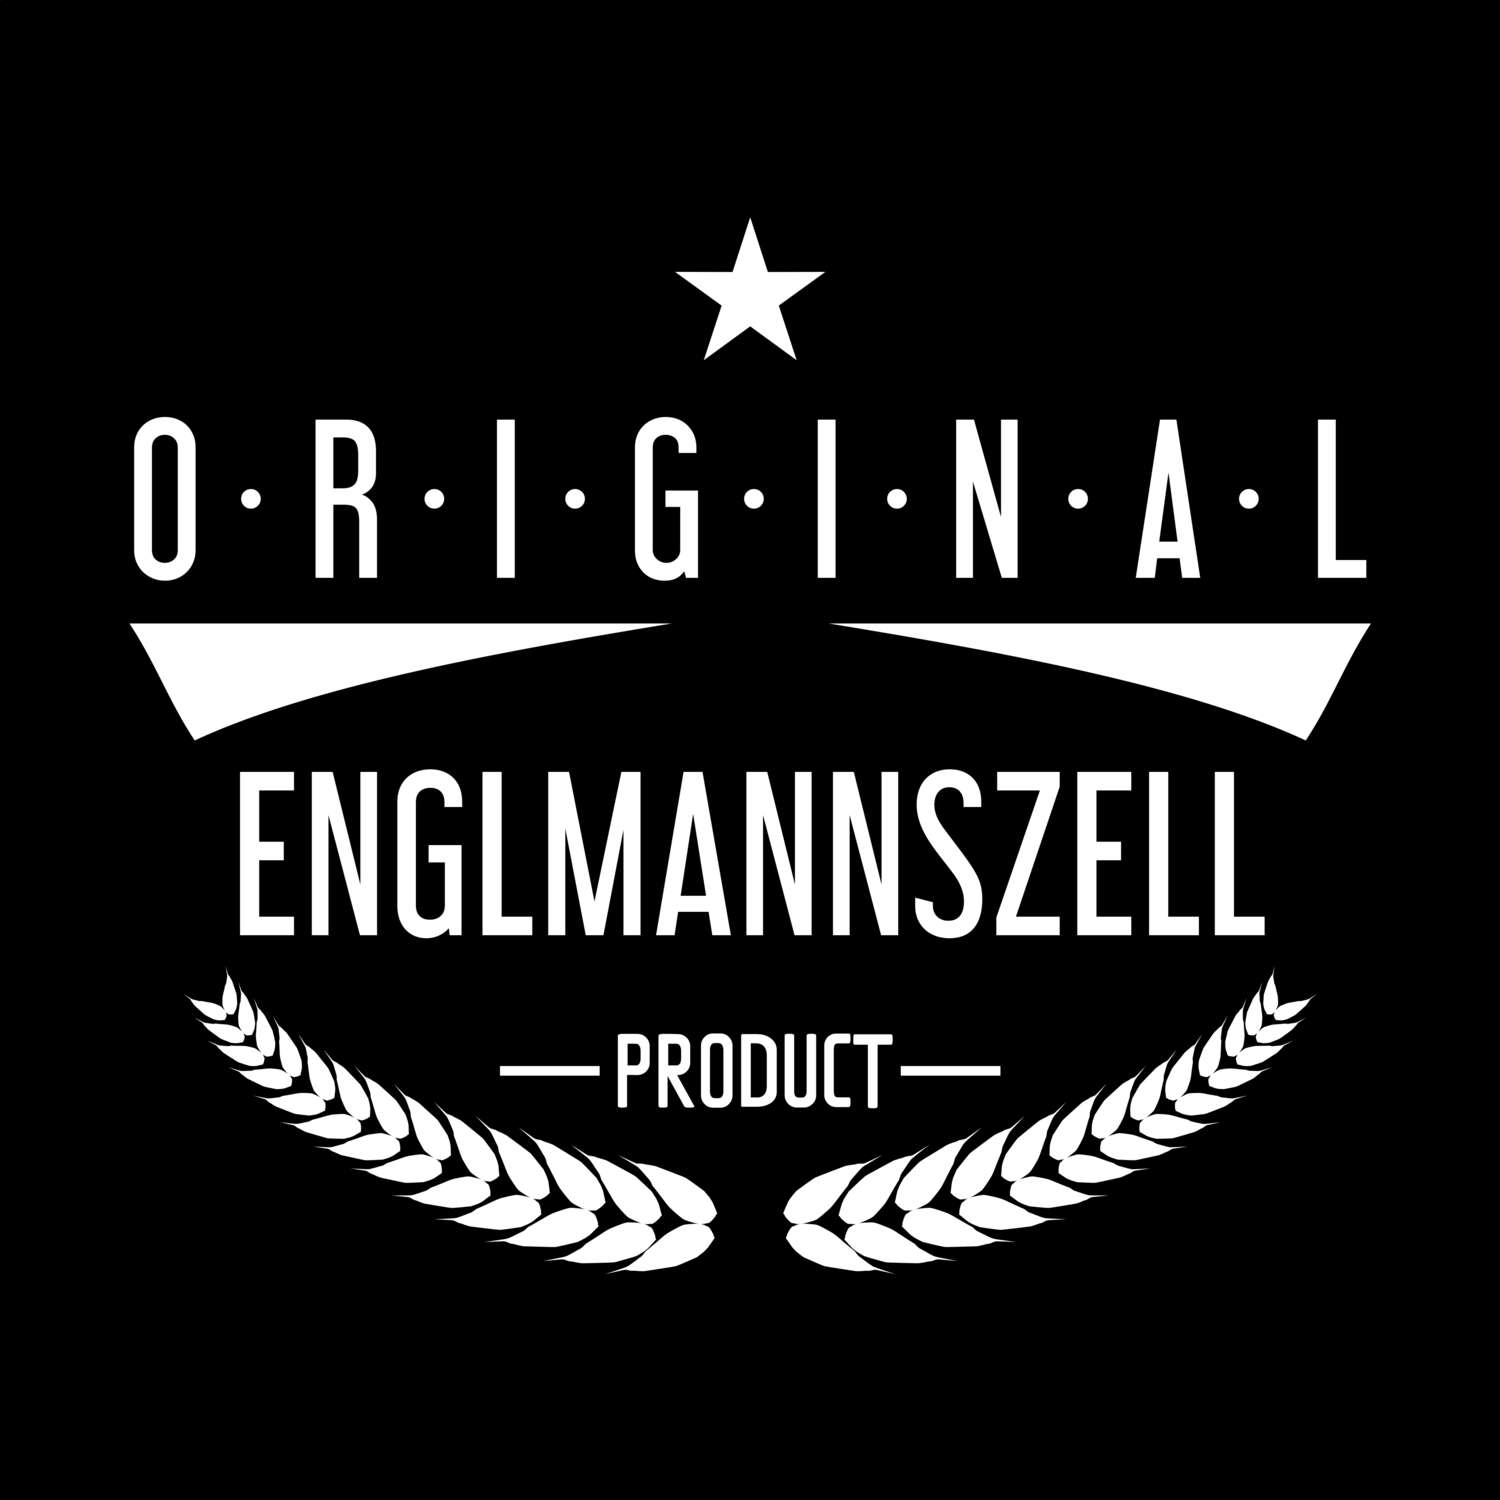 Englmannszell T-Shirt »Original Product«